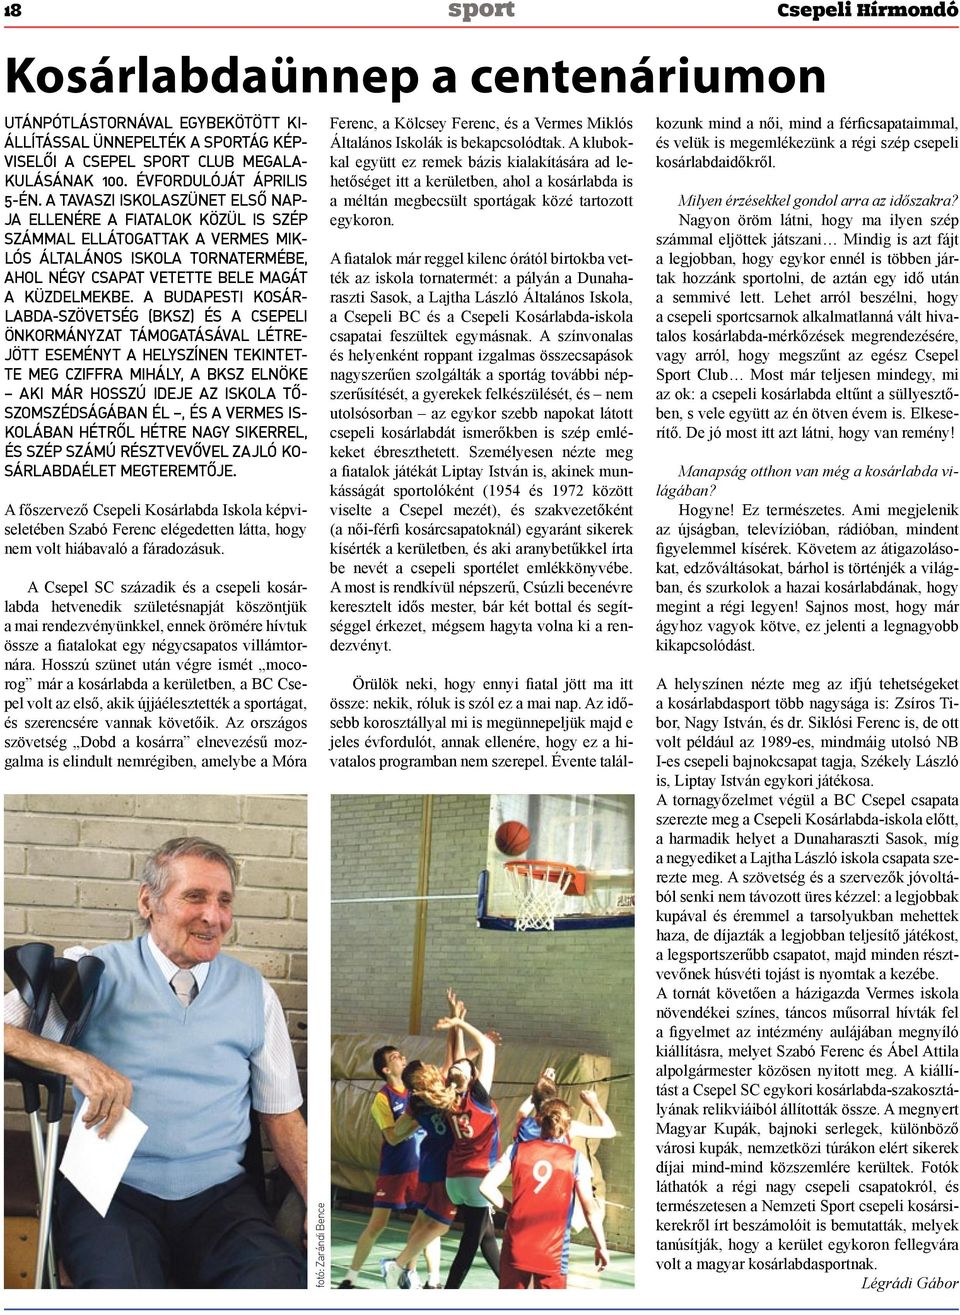 A Budapesti Kosárlabda-Szövetség (BKSZ) és a csepeli önkormányzat támogatásával létrejött eseményt a helyszínen tekintette meg Cziffra Mihály, a BKSZ elnöke aki már hosszú ideje az iskola